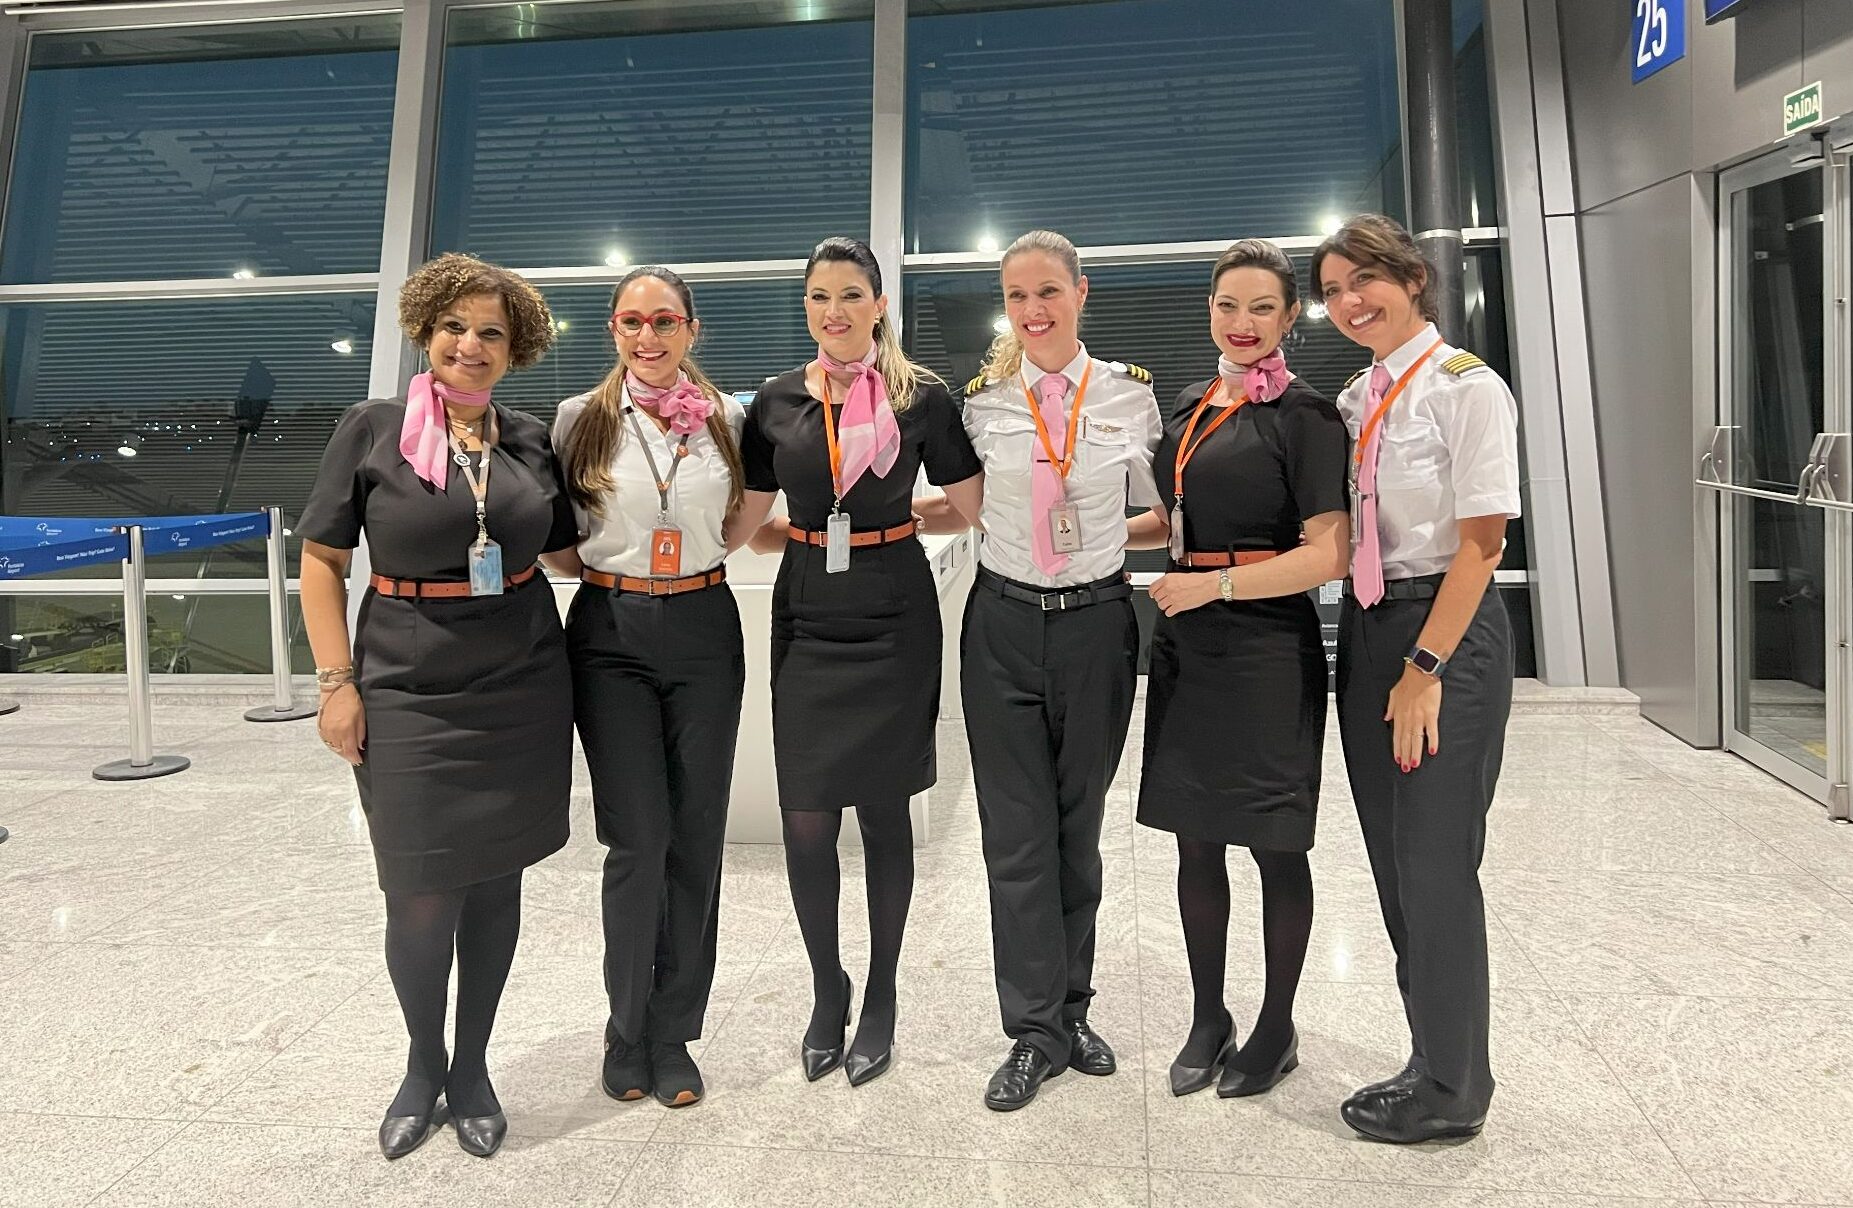 IMG 8225 e1704976845404 Gol estreia filme "Barbie" a bordo de seus voos com ação especial para passageiros